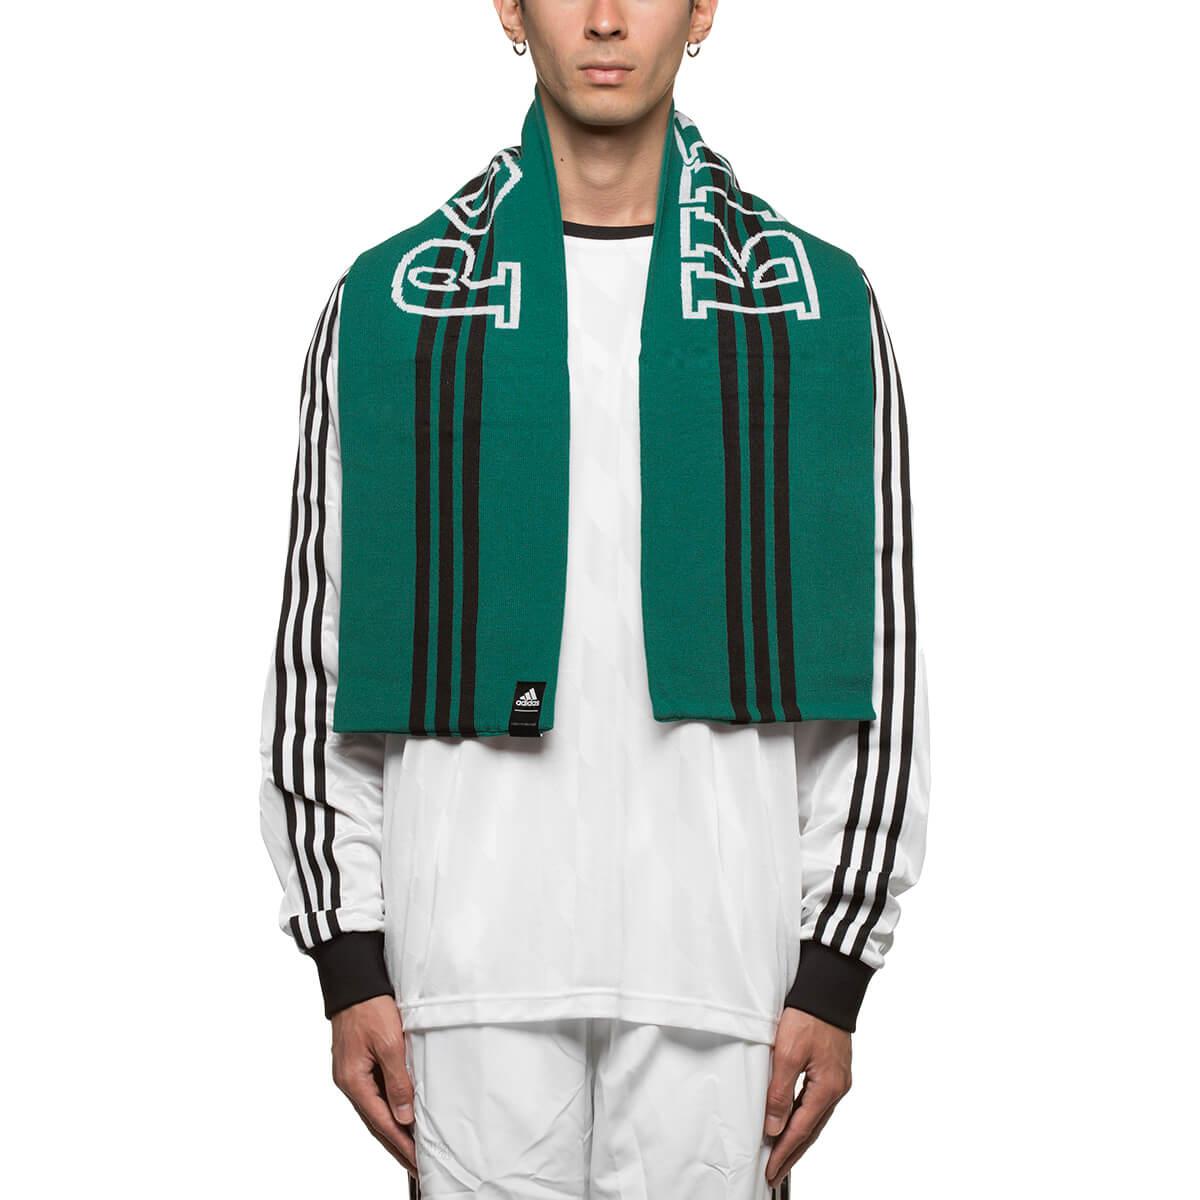 Gosha Rubchinskiy Synthetic Adidas Scarf in Green for Men - Lyst